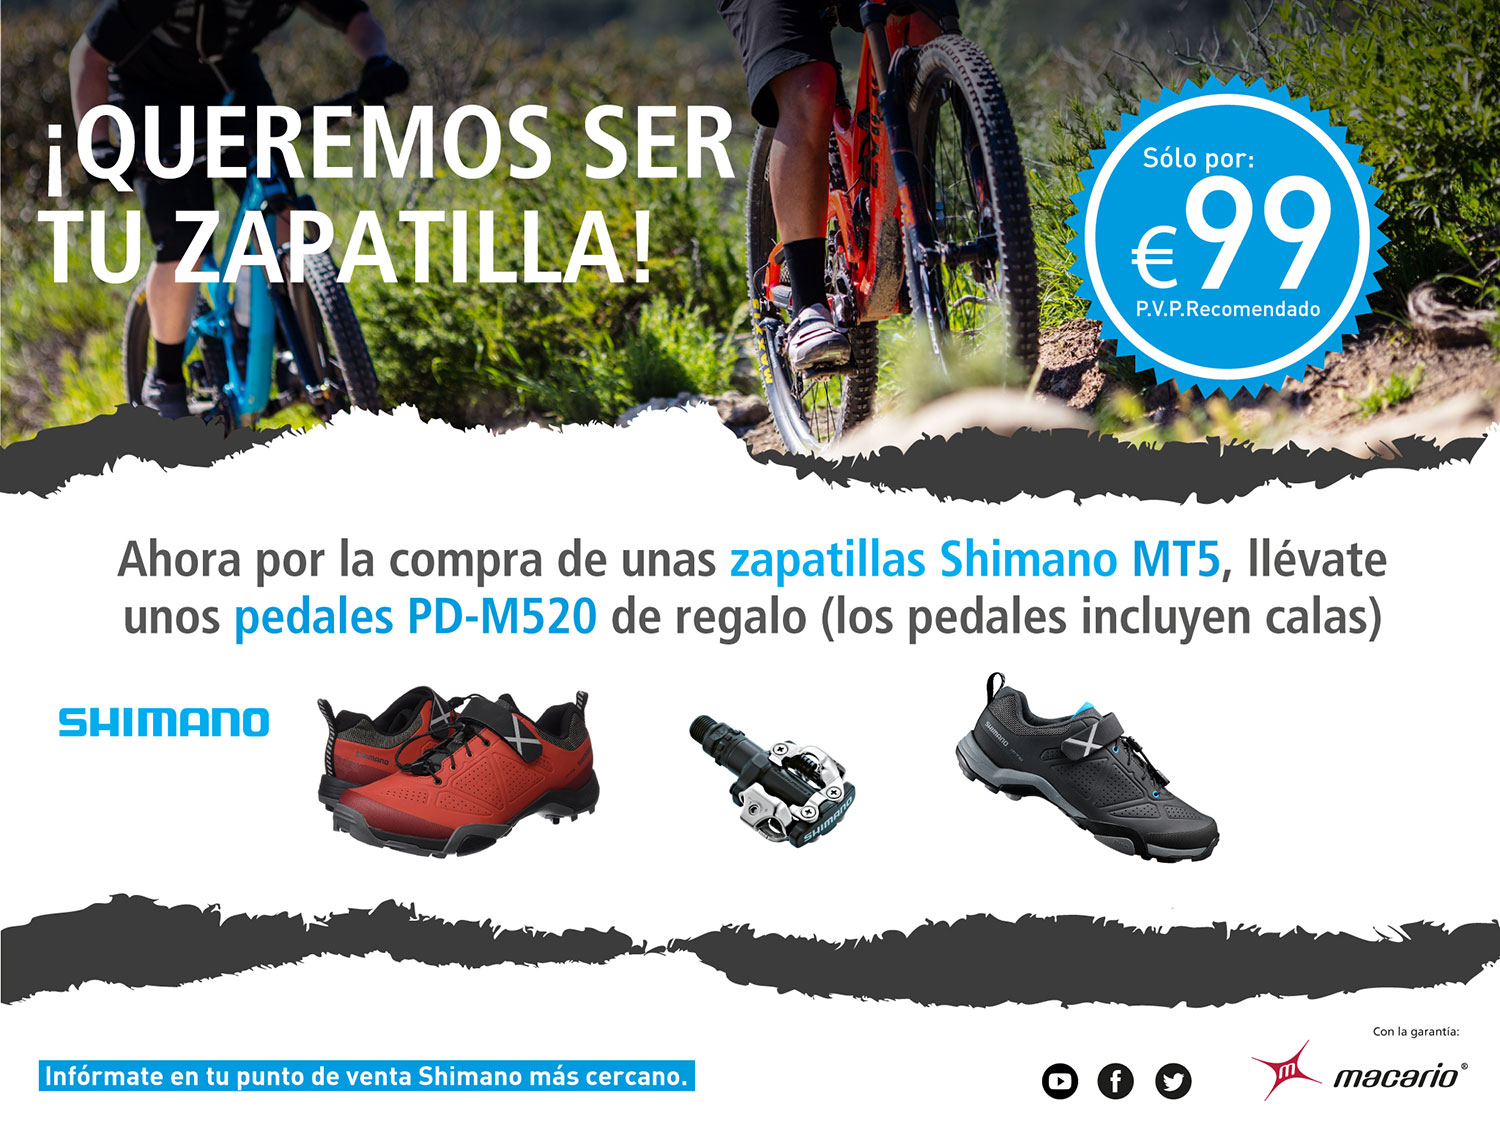 Pásate a los pedales automáticos por de 100€ gracias a Shimano